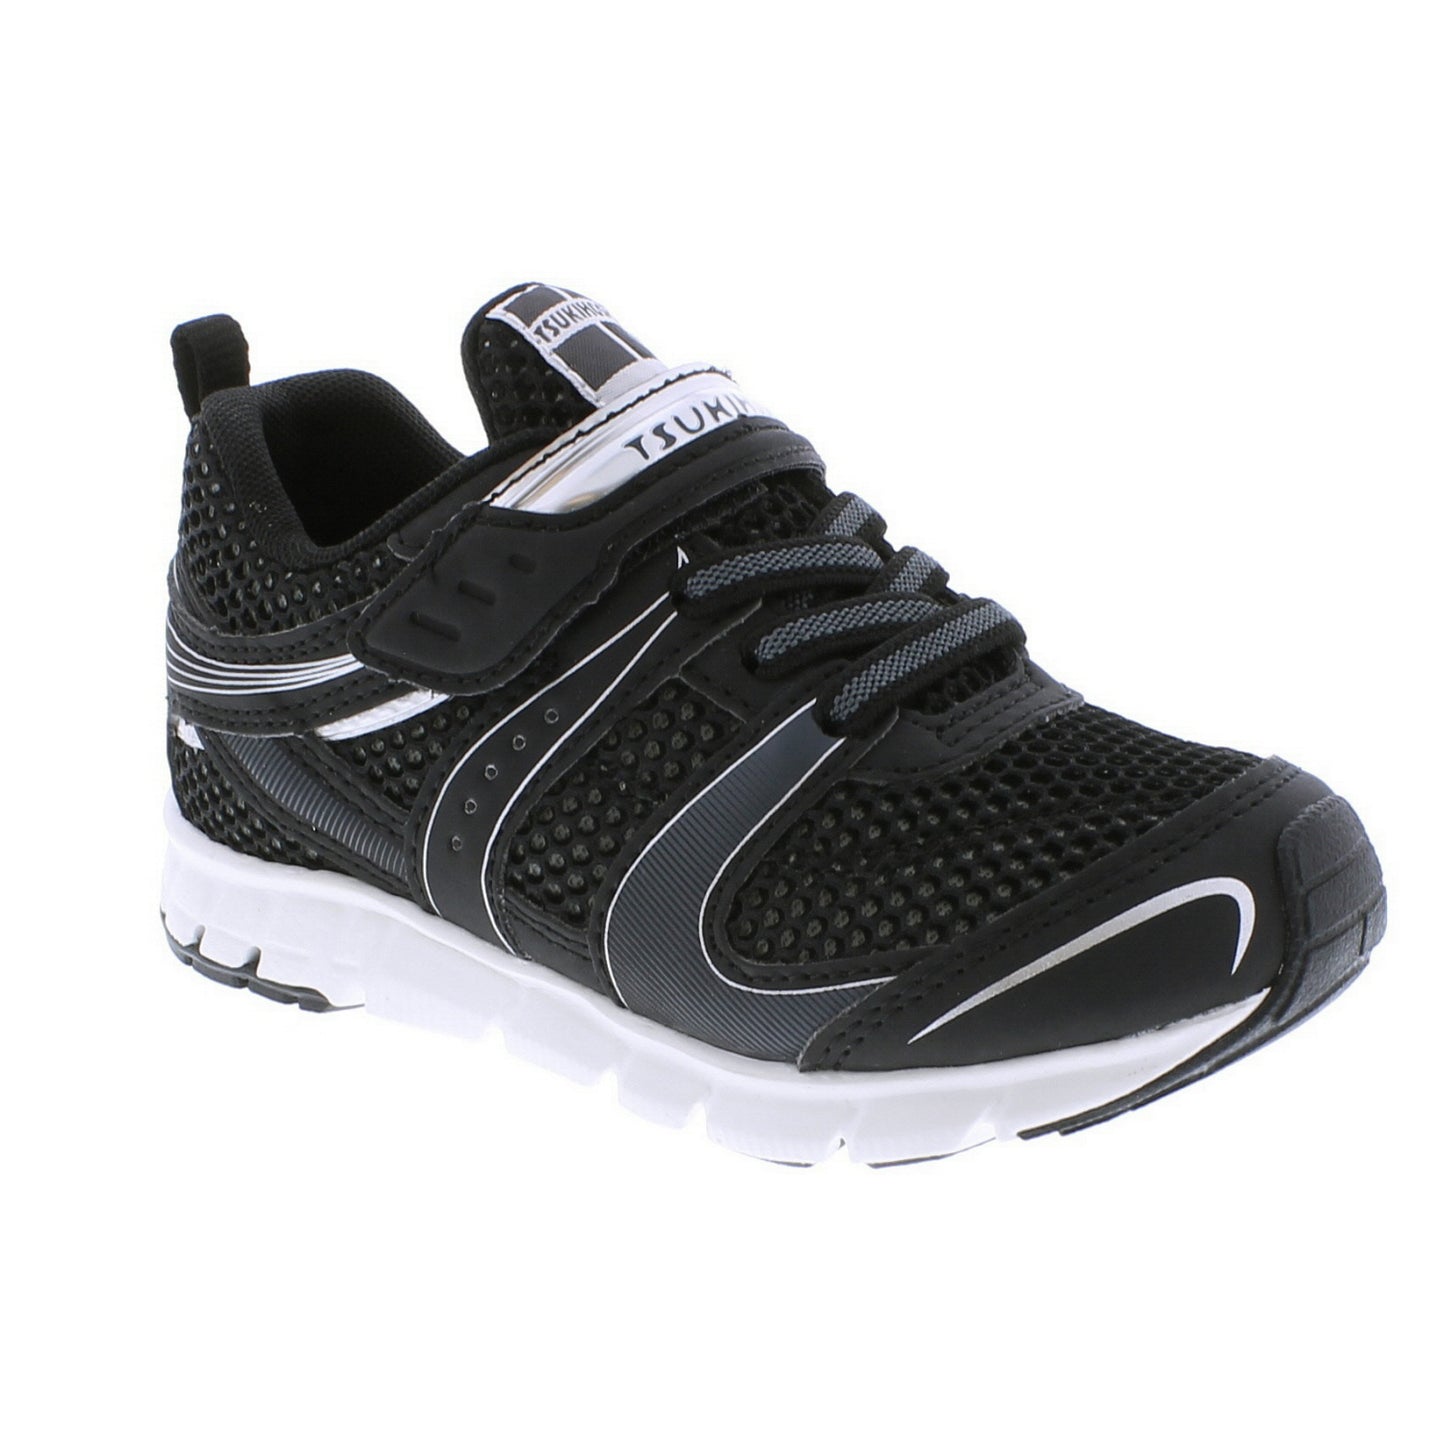 Velocity Sneaker - Black/Silver